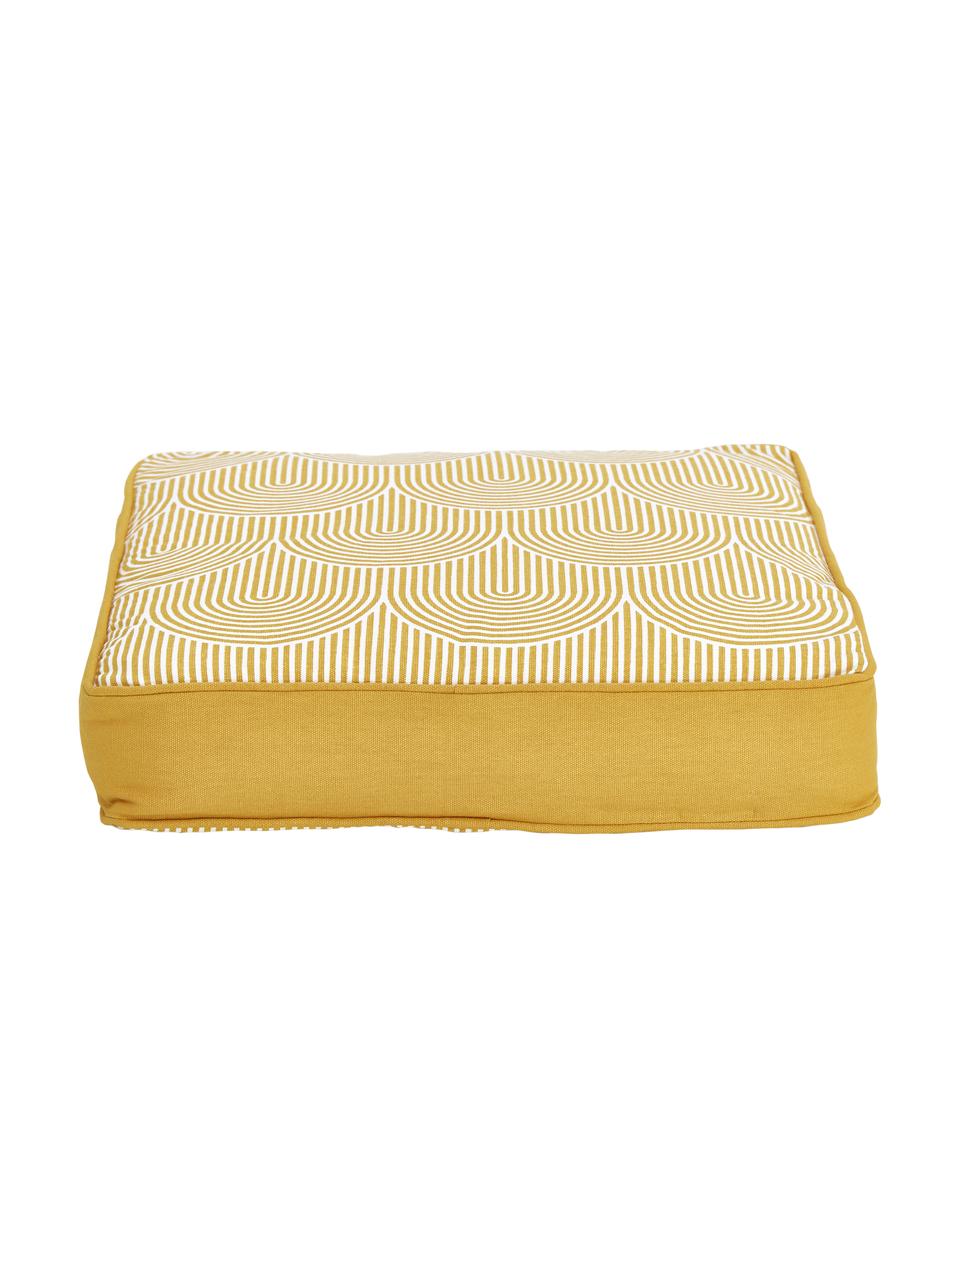 Cuscino sedia alto giallo/bianco Arc, Rivestimento: 100% cotone, Giallo, Larg. 40 x Lung. 40 cm